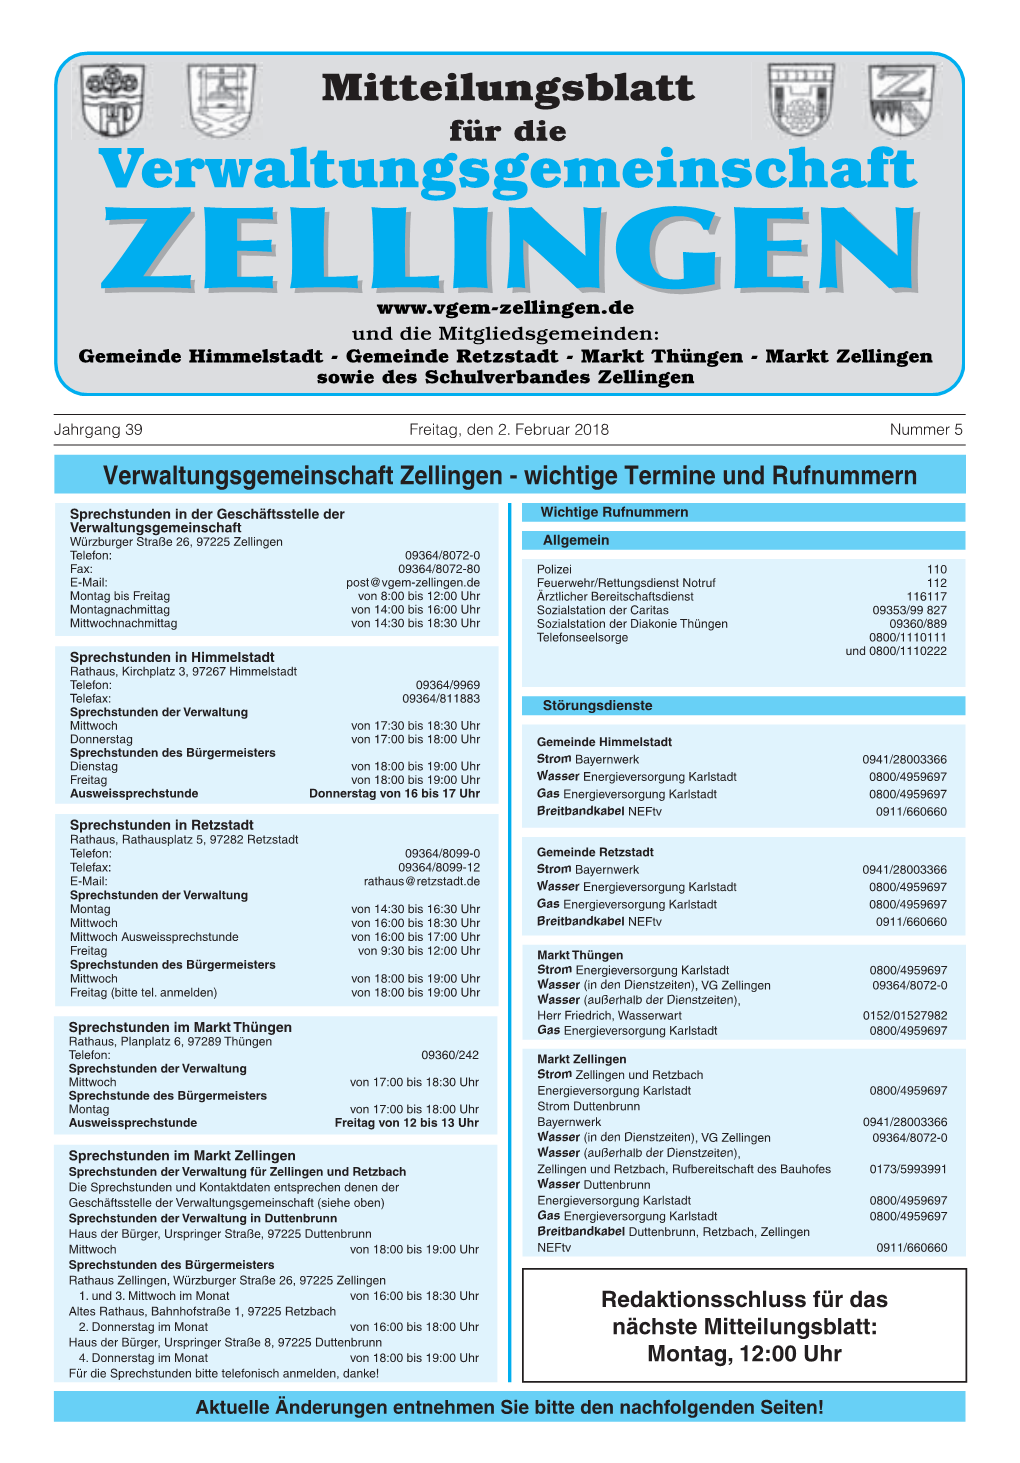 Verwaltungsgemeinschaft Zellingen - Wichtige Termine Und Rufnummern